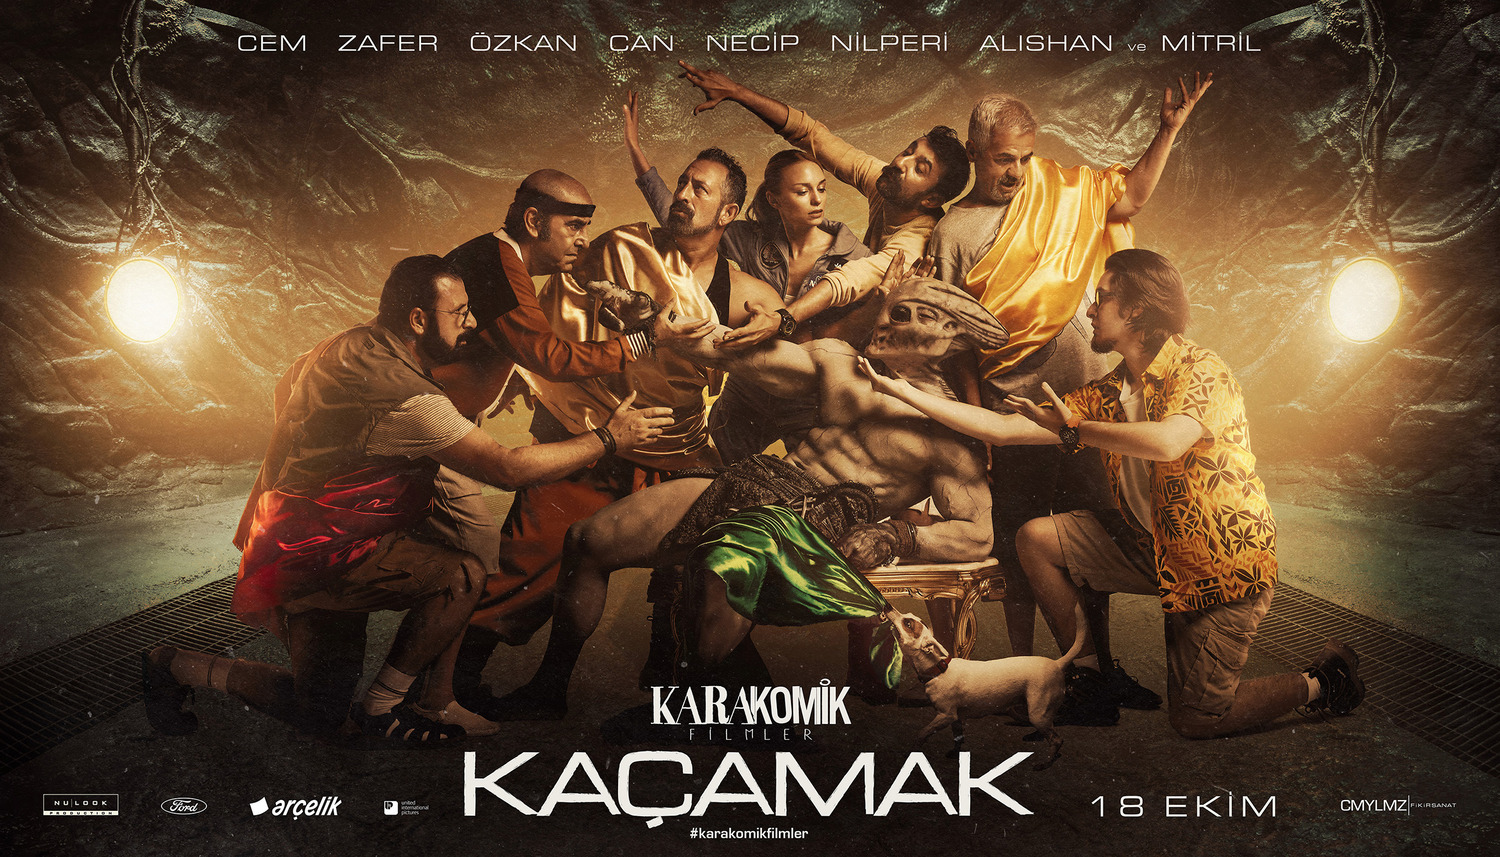 Extra Large Movie Poster Image for Karakomik Filmler (#4 of 9)